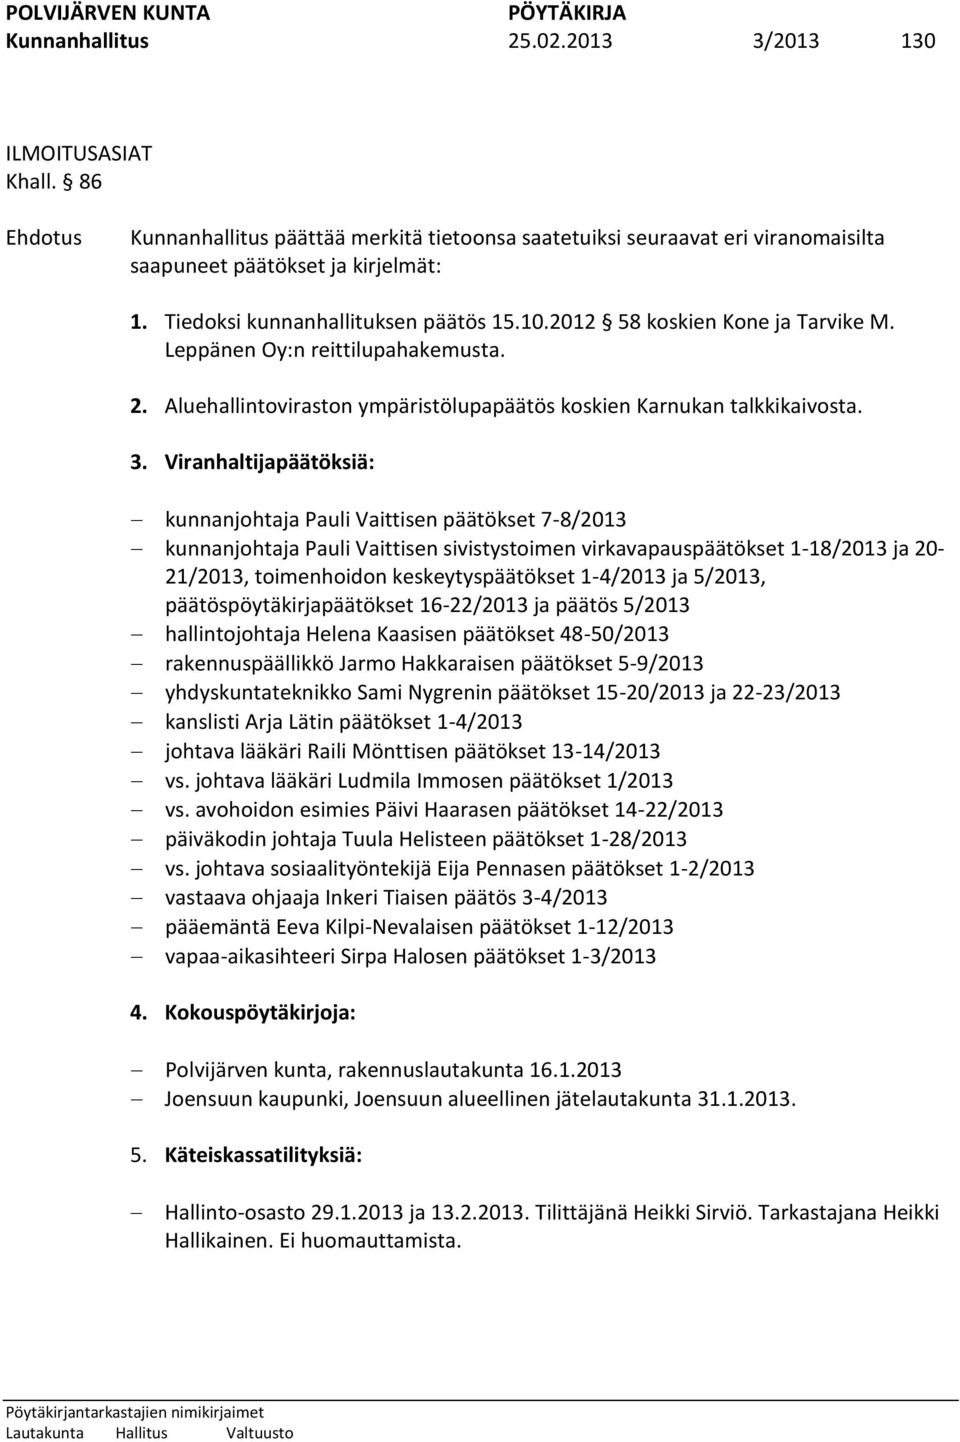 Viranhaltijapäätöksiä: kunnanjohtaja Pauli Vaittisen päätökset 7-8/2013 kunnanjohtaja Pauli Vaittisen sivistystoimen virkavapauspäätökset 1-18/2013 ja 20-21/2013, toimenhoidon keskeytyspäätökset